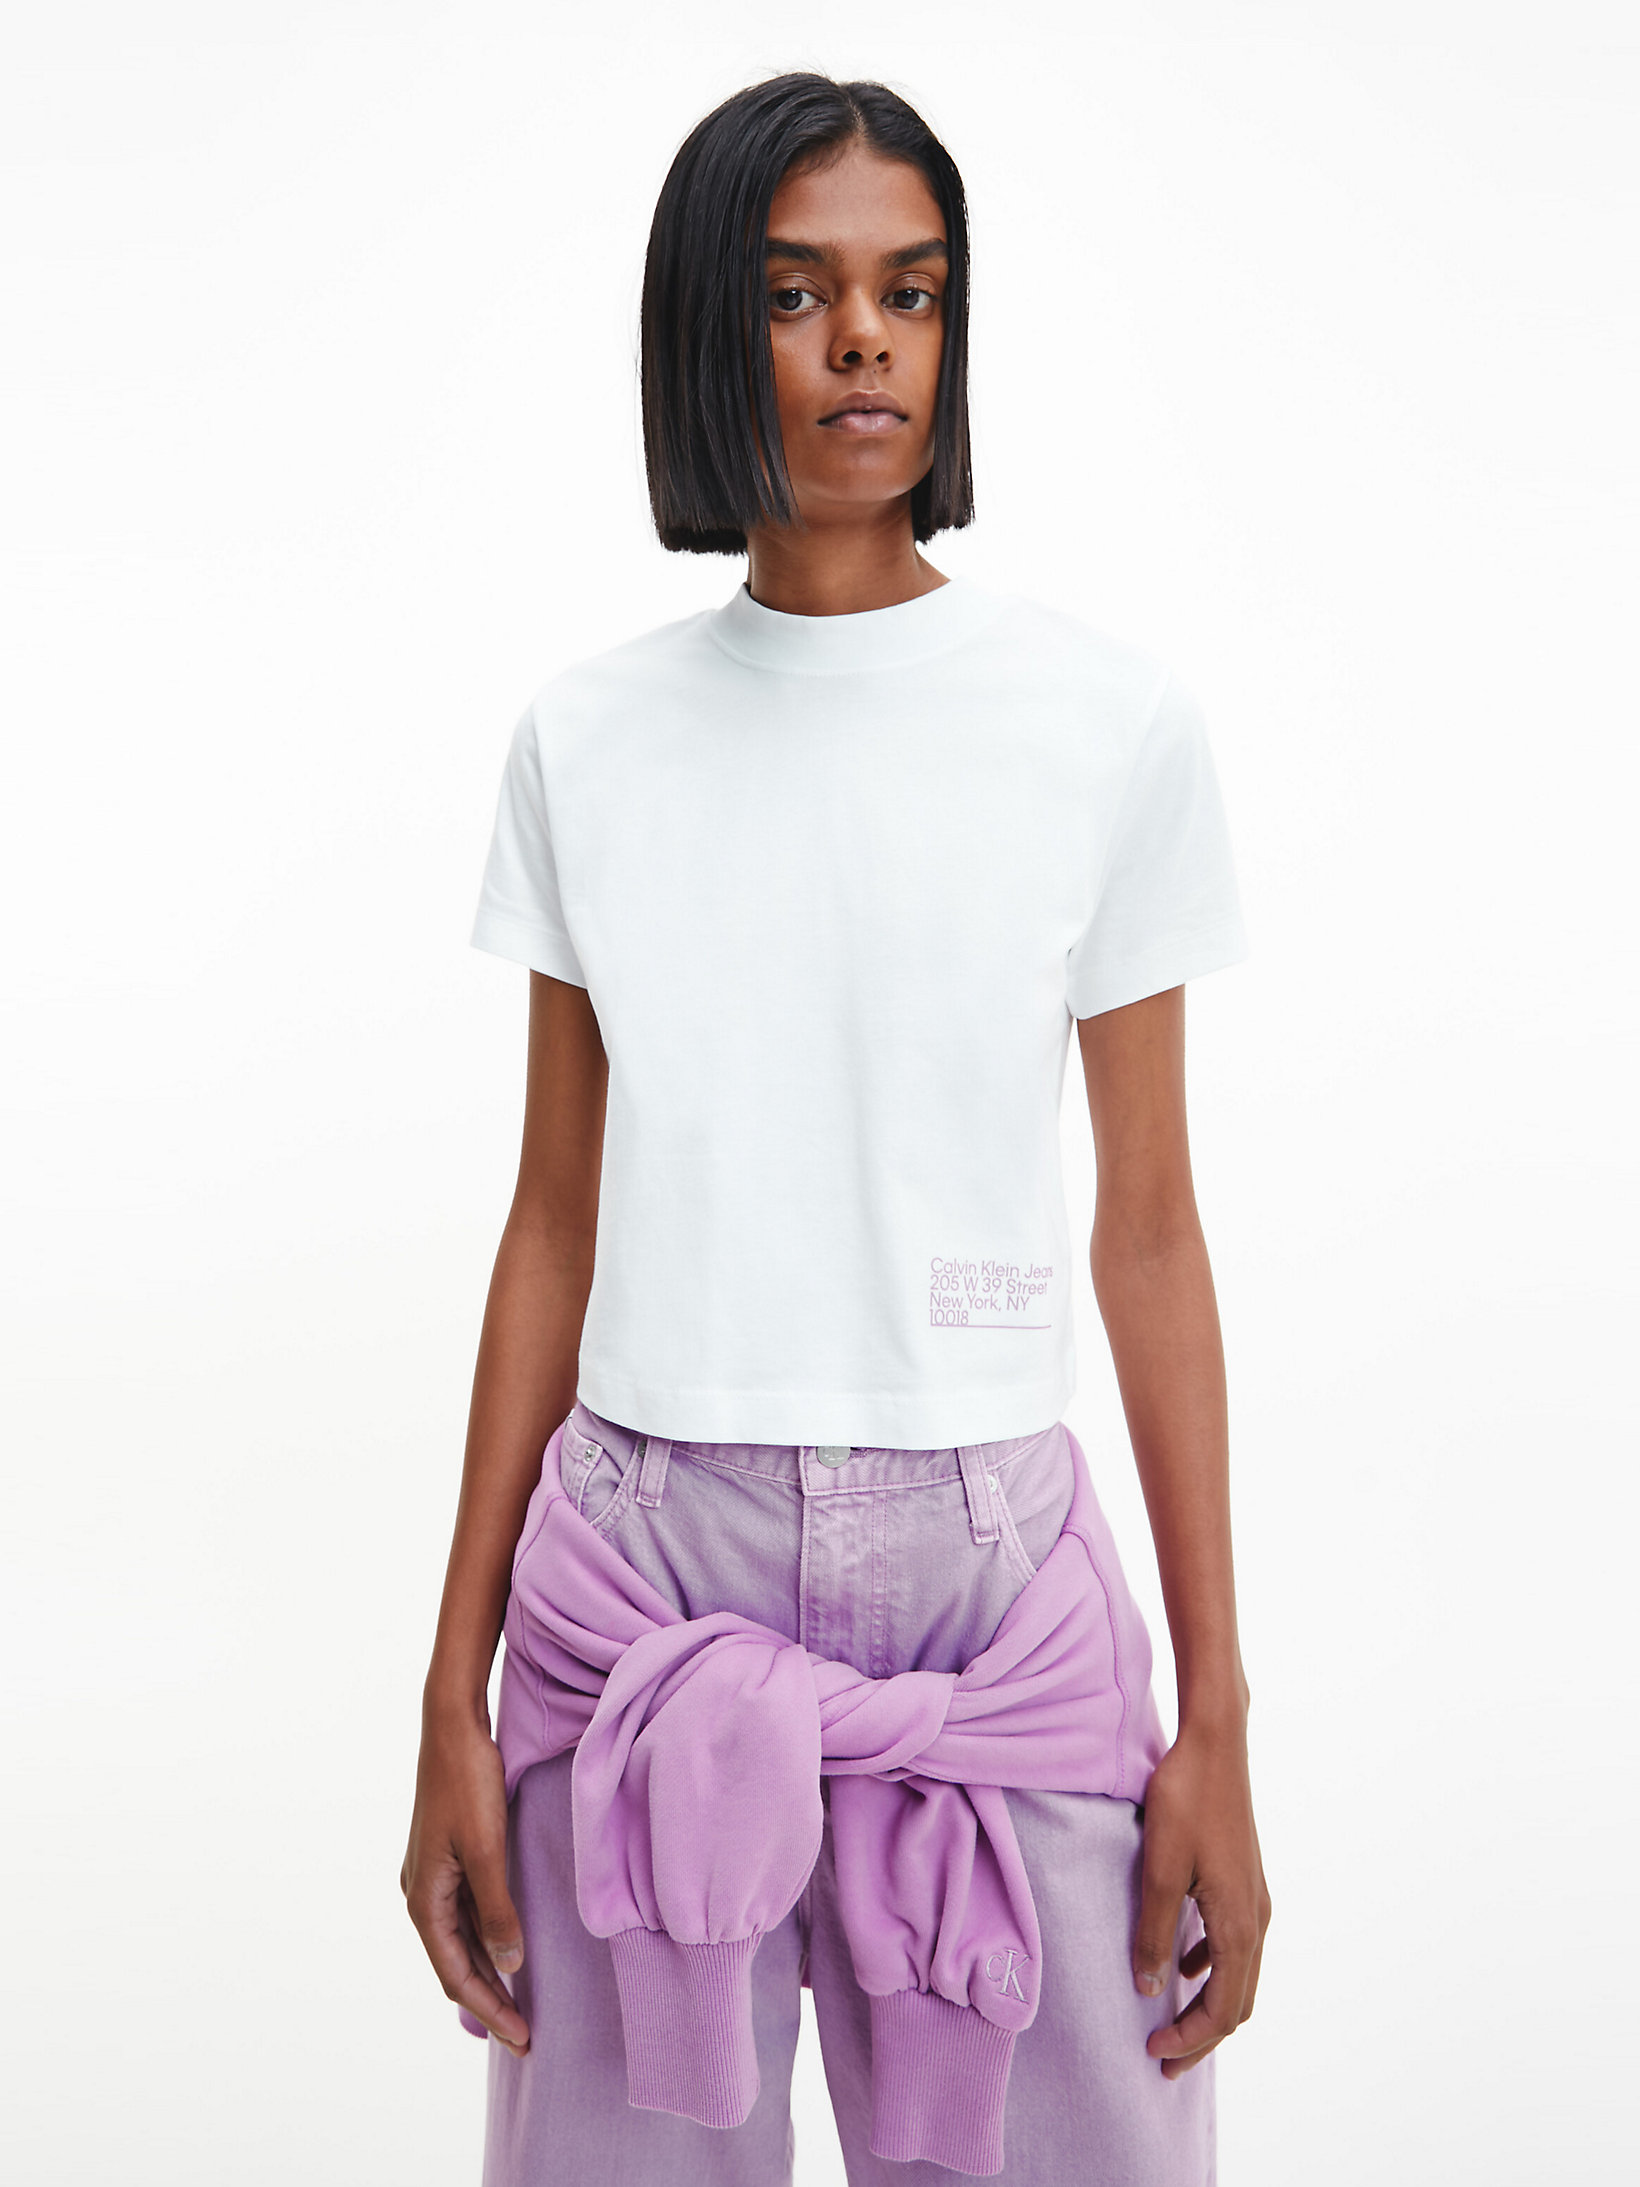 T-Shirt Corta In Cotone Biologico > Bright White > undefined donna > Calvin Klein